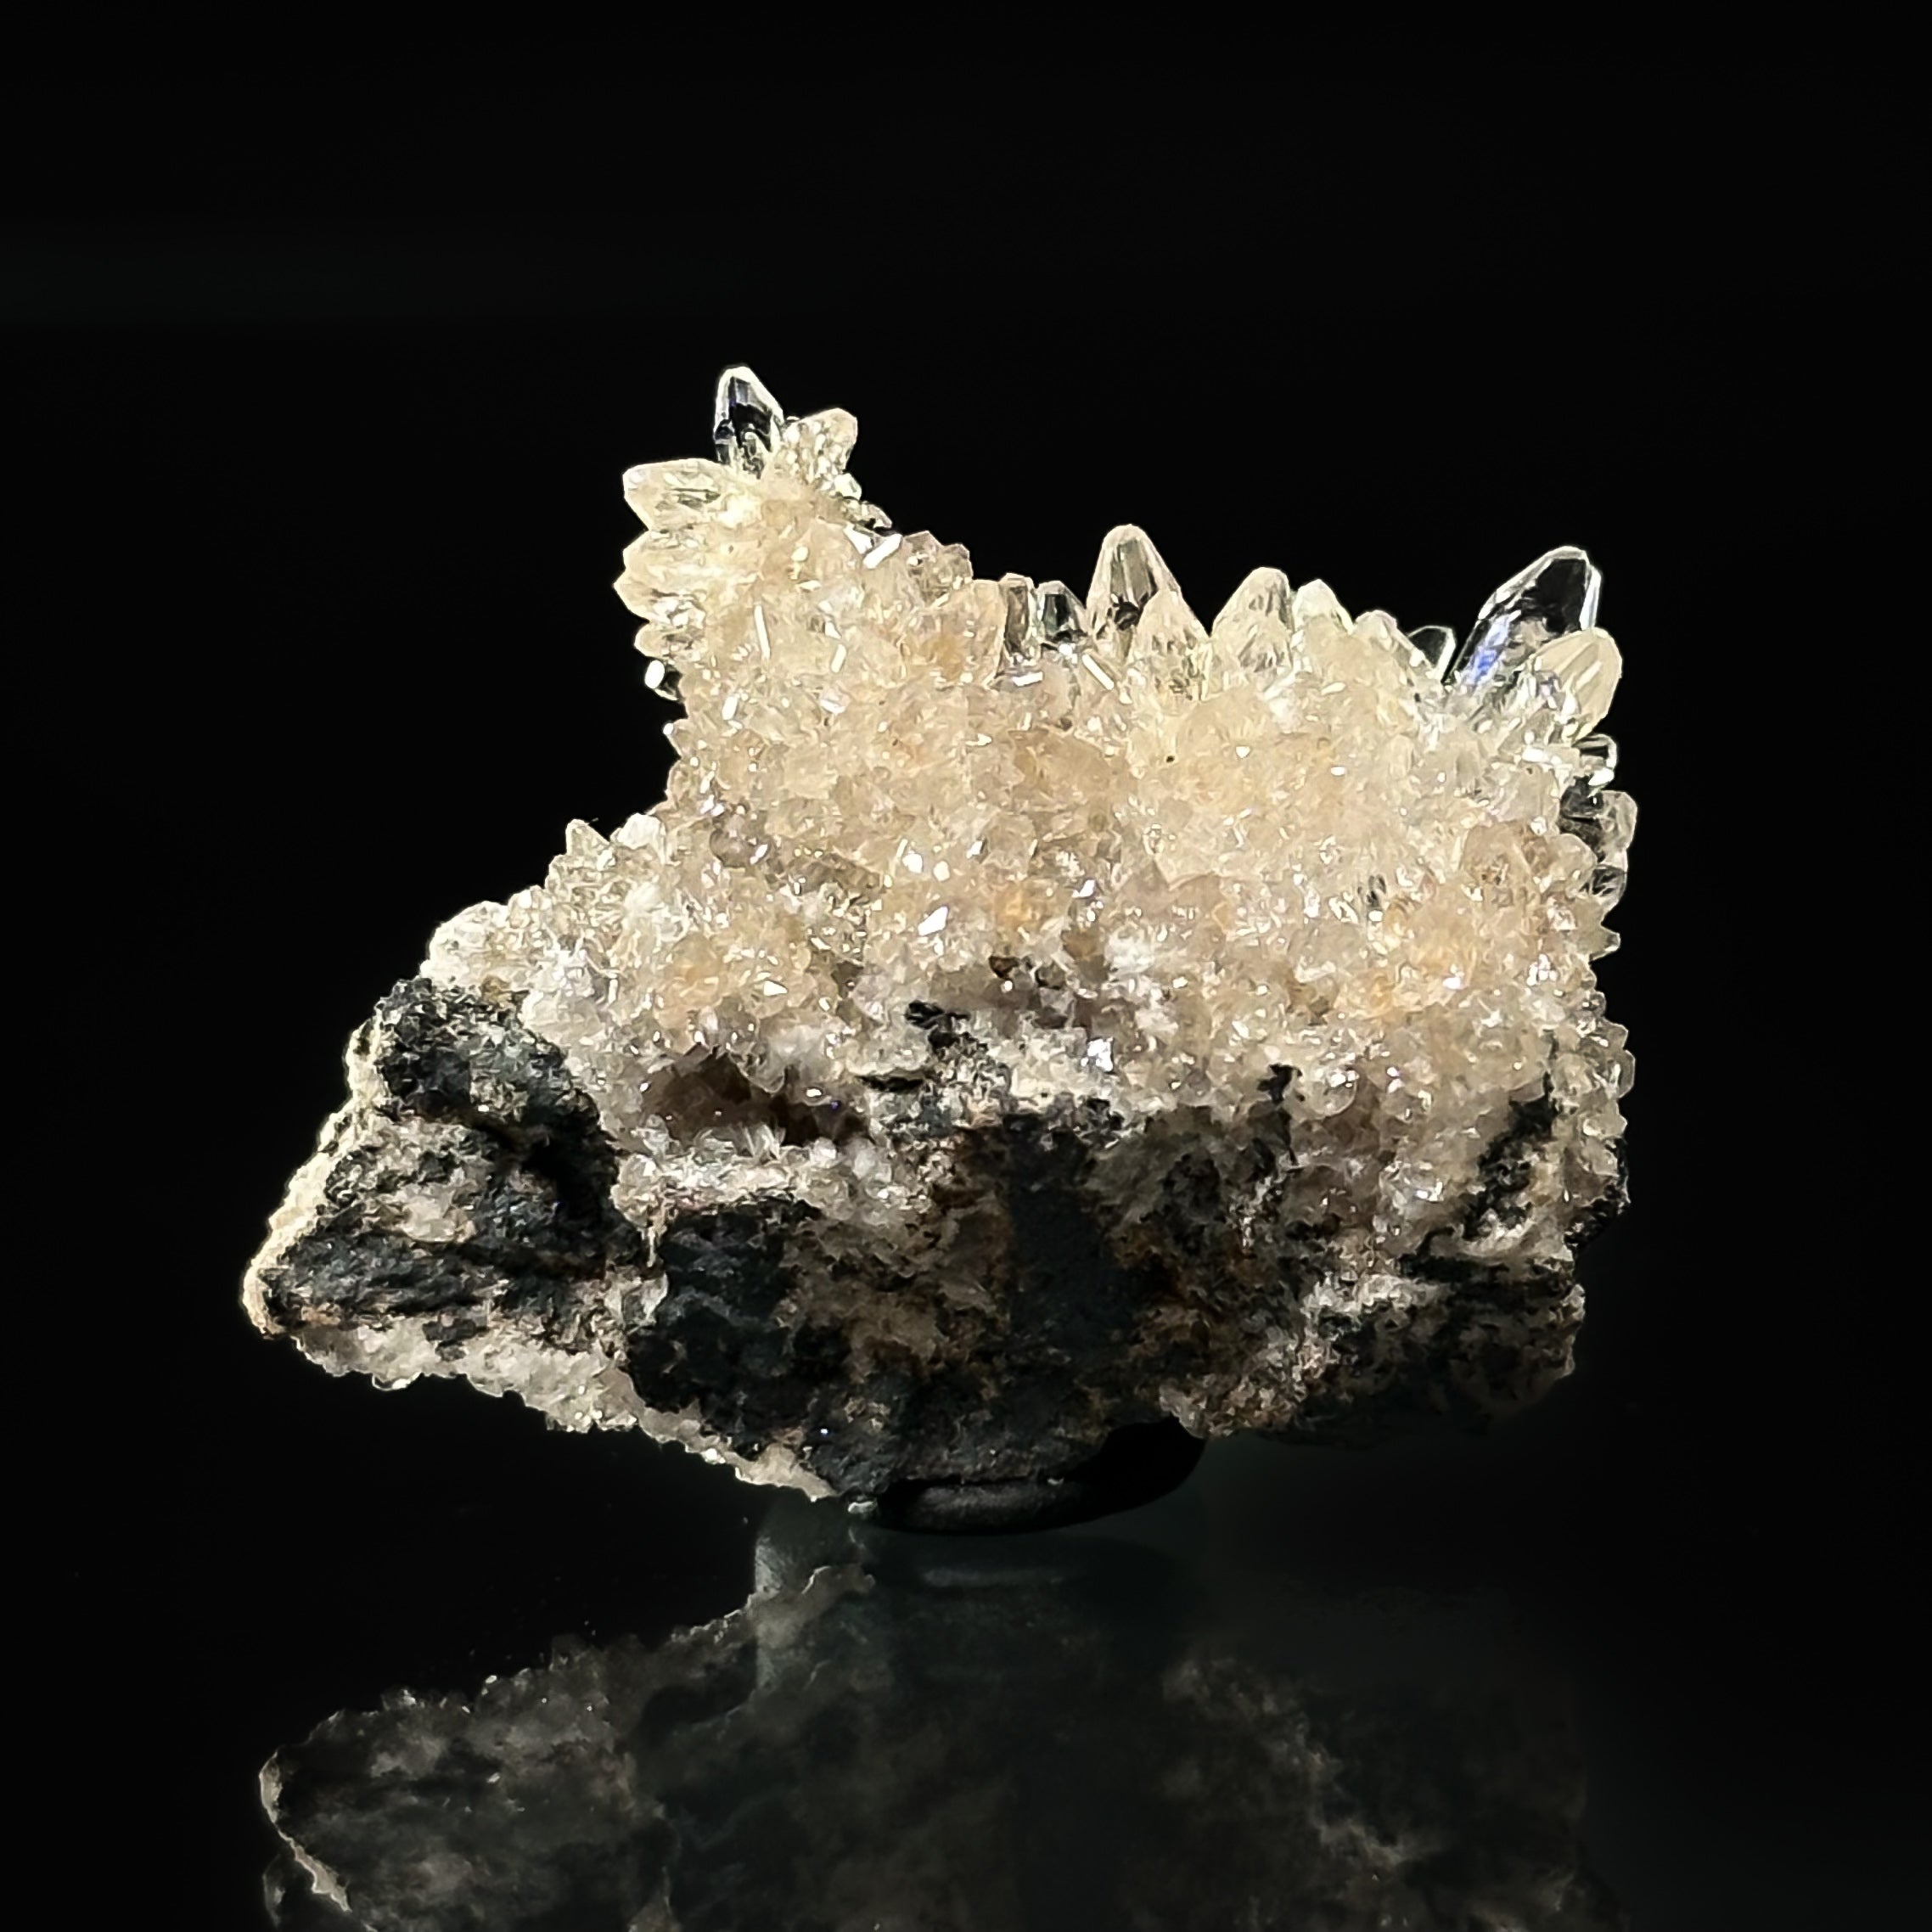 Oyelite on Calcite